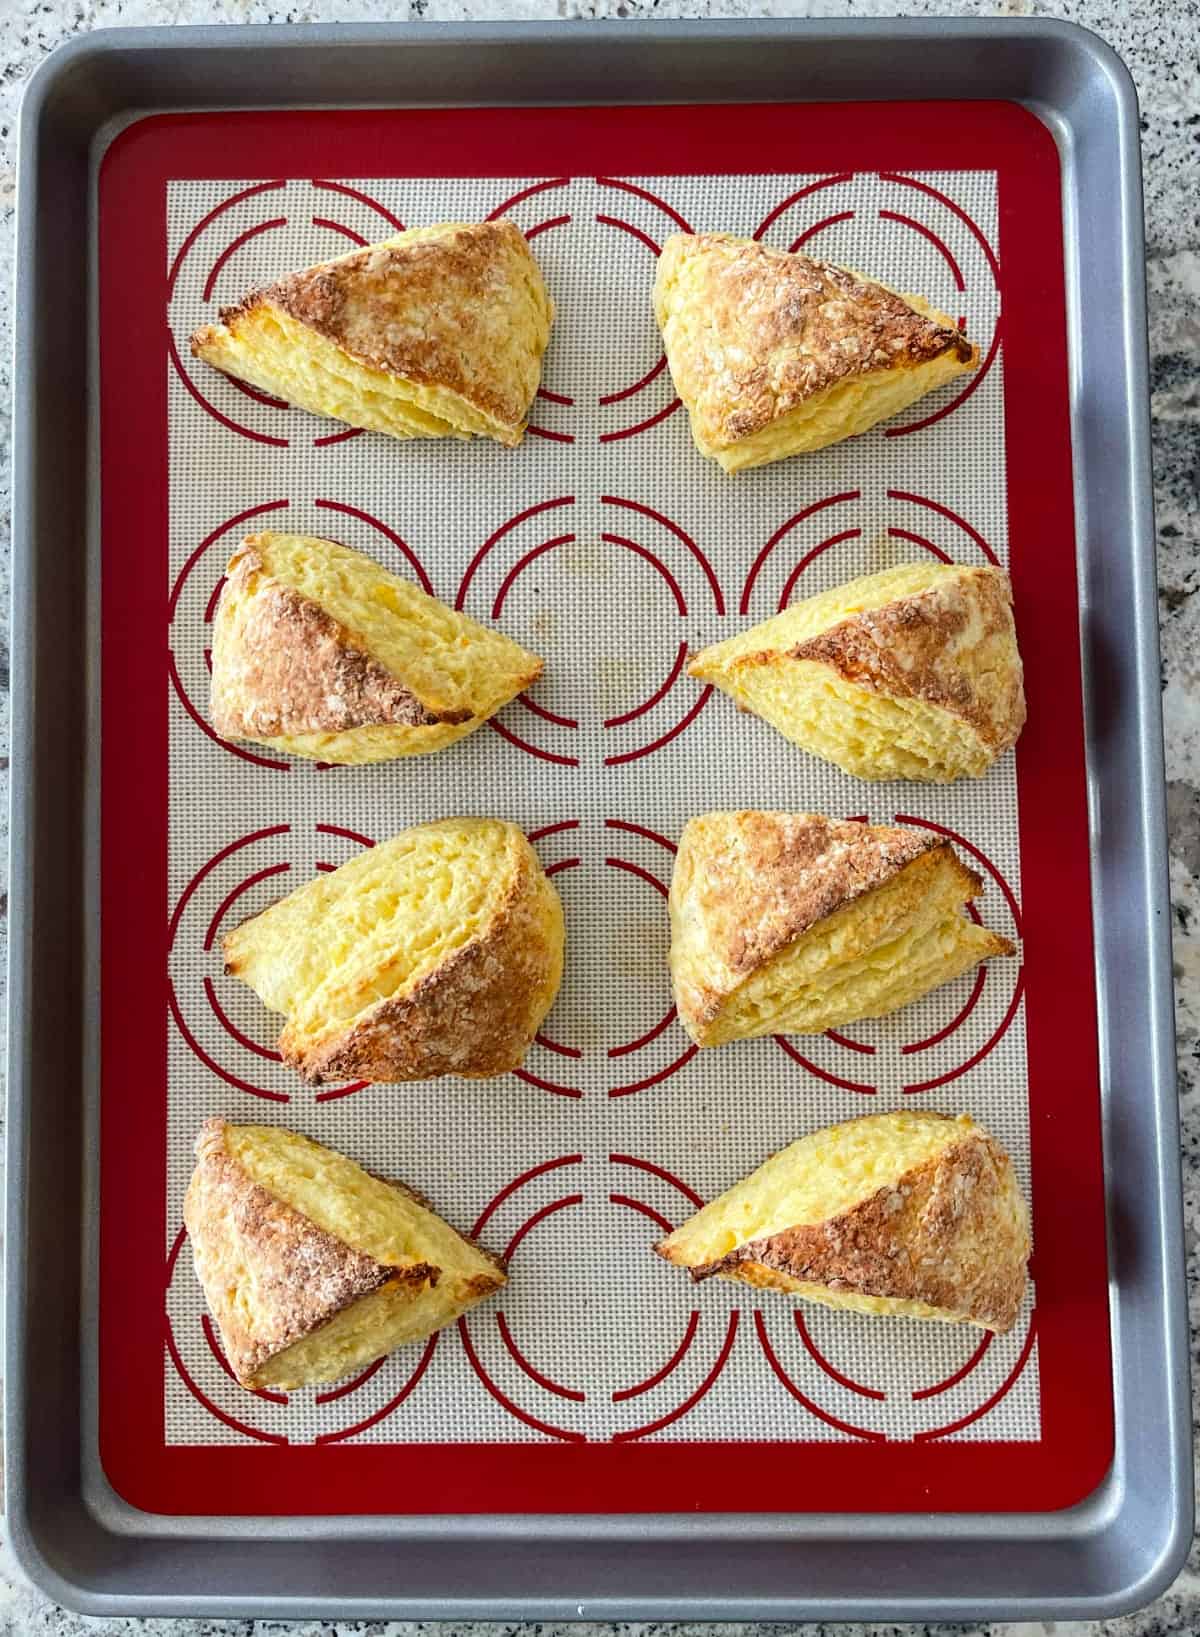 Orange scones on baking sheet.